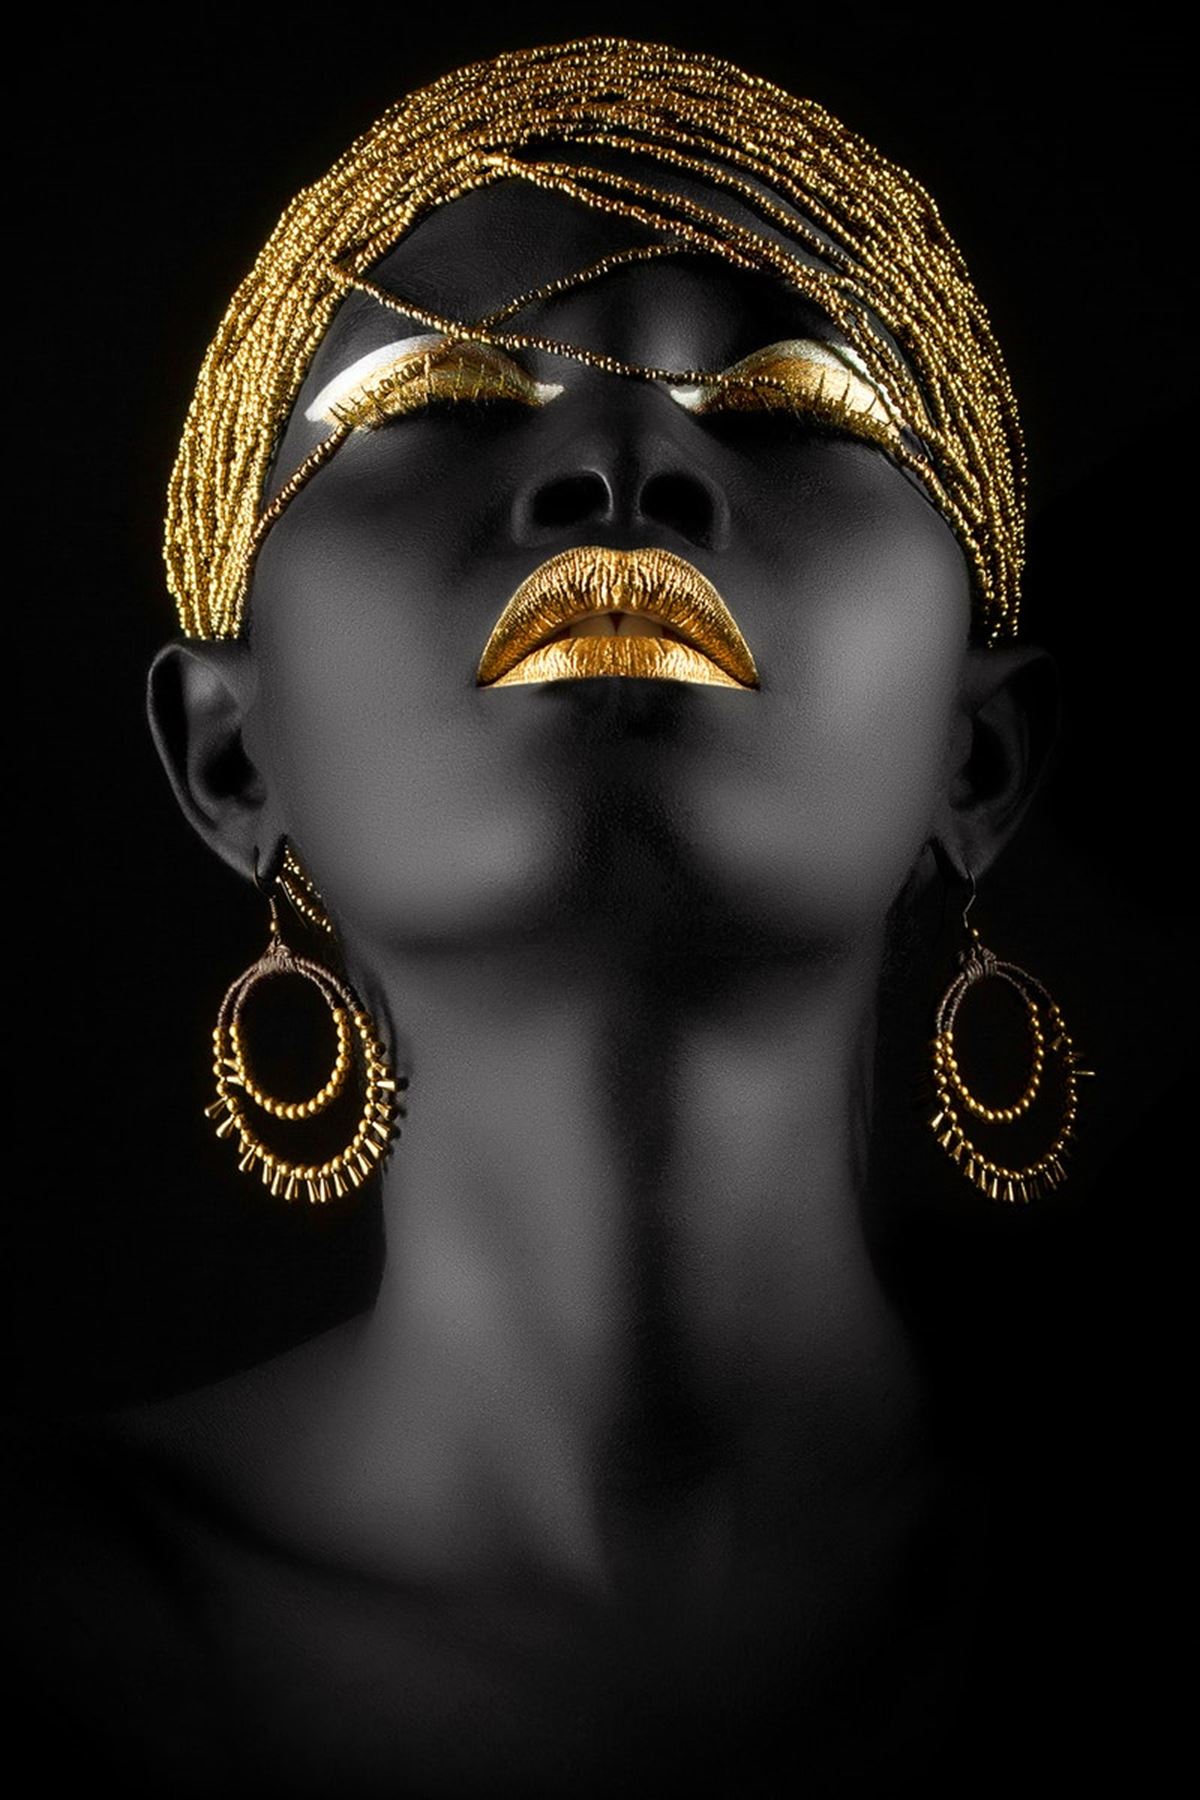 Black Skin Woman And Golden Makeup, Siyah Tenli Kadın Ve Altın Makyaj